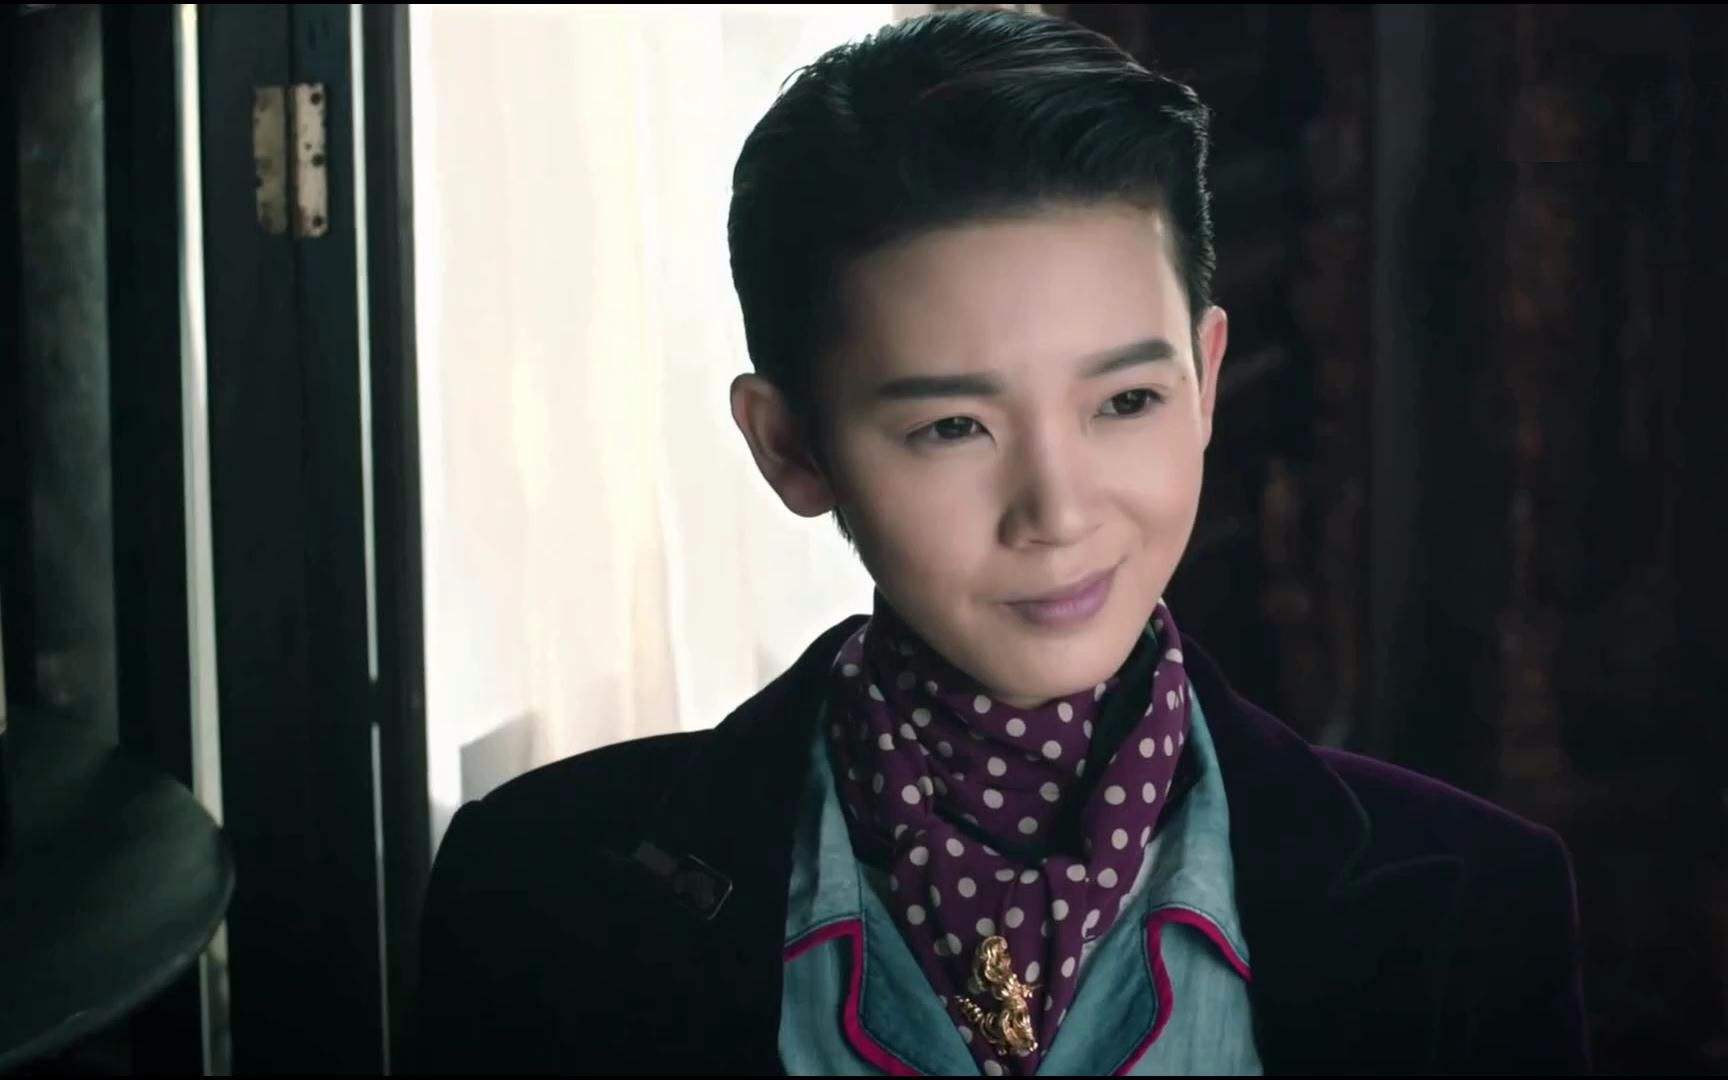 在《无心法师2》中,陈瑶反串饰演丁小猫,绰号小丁猫,原始开天辟地就